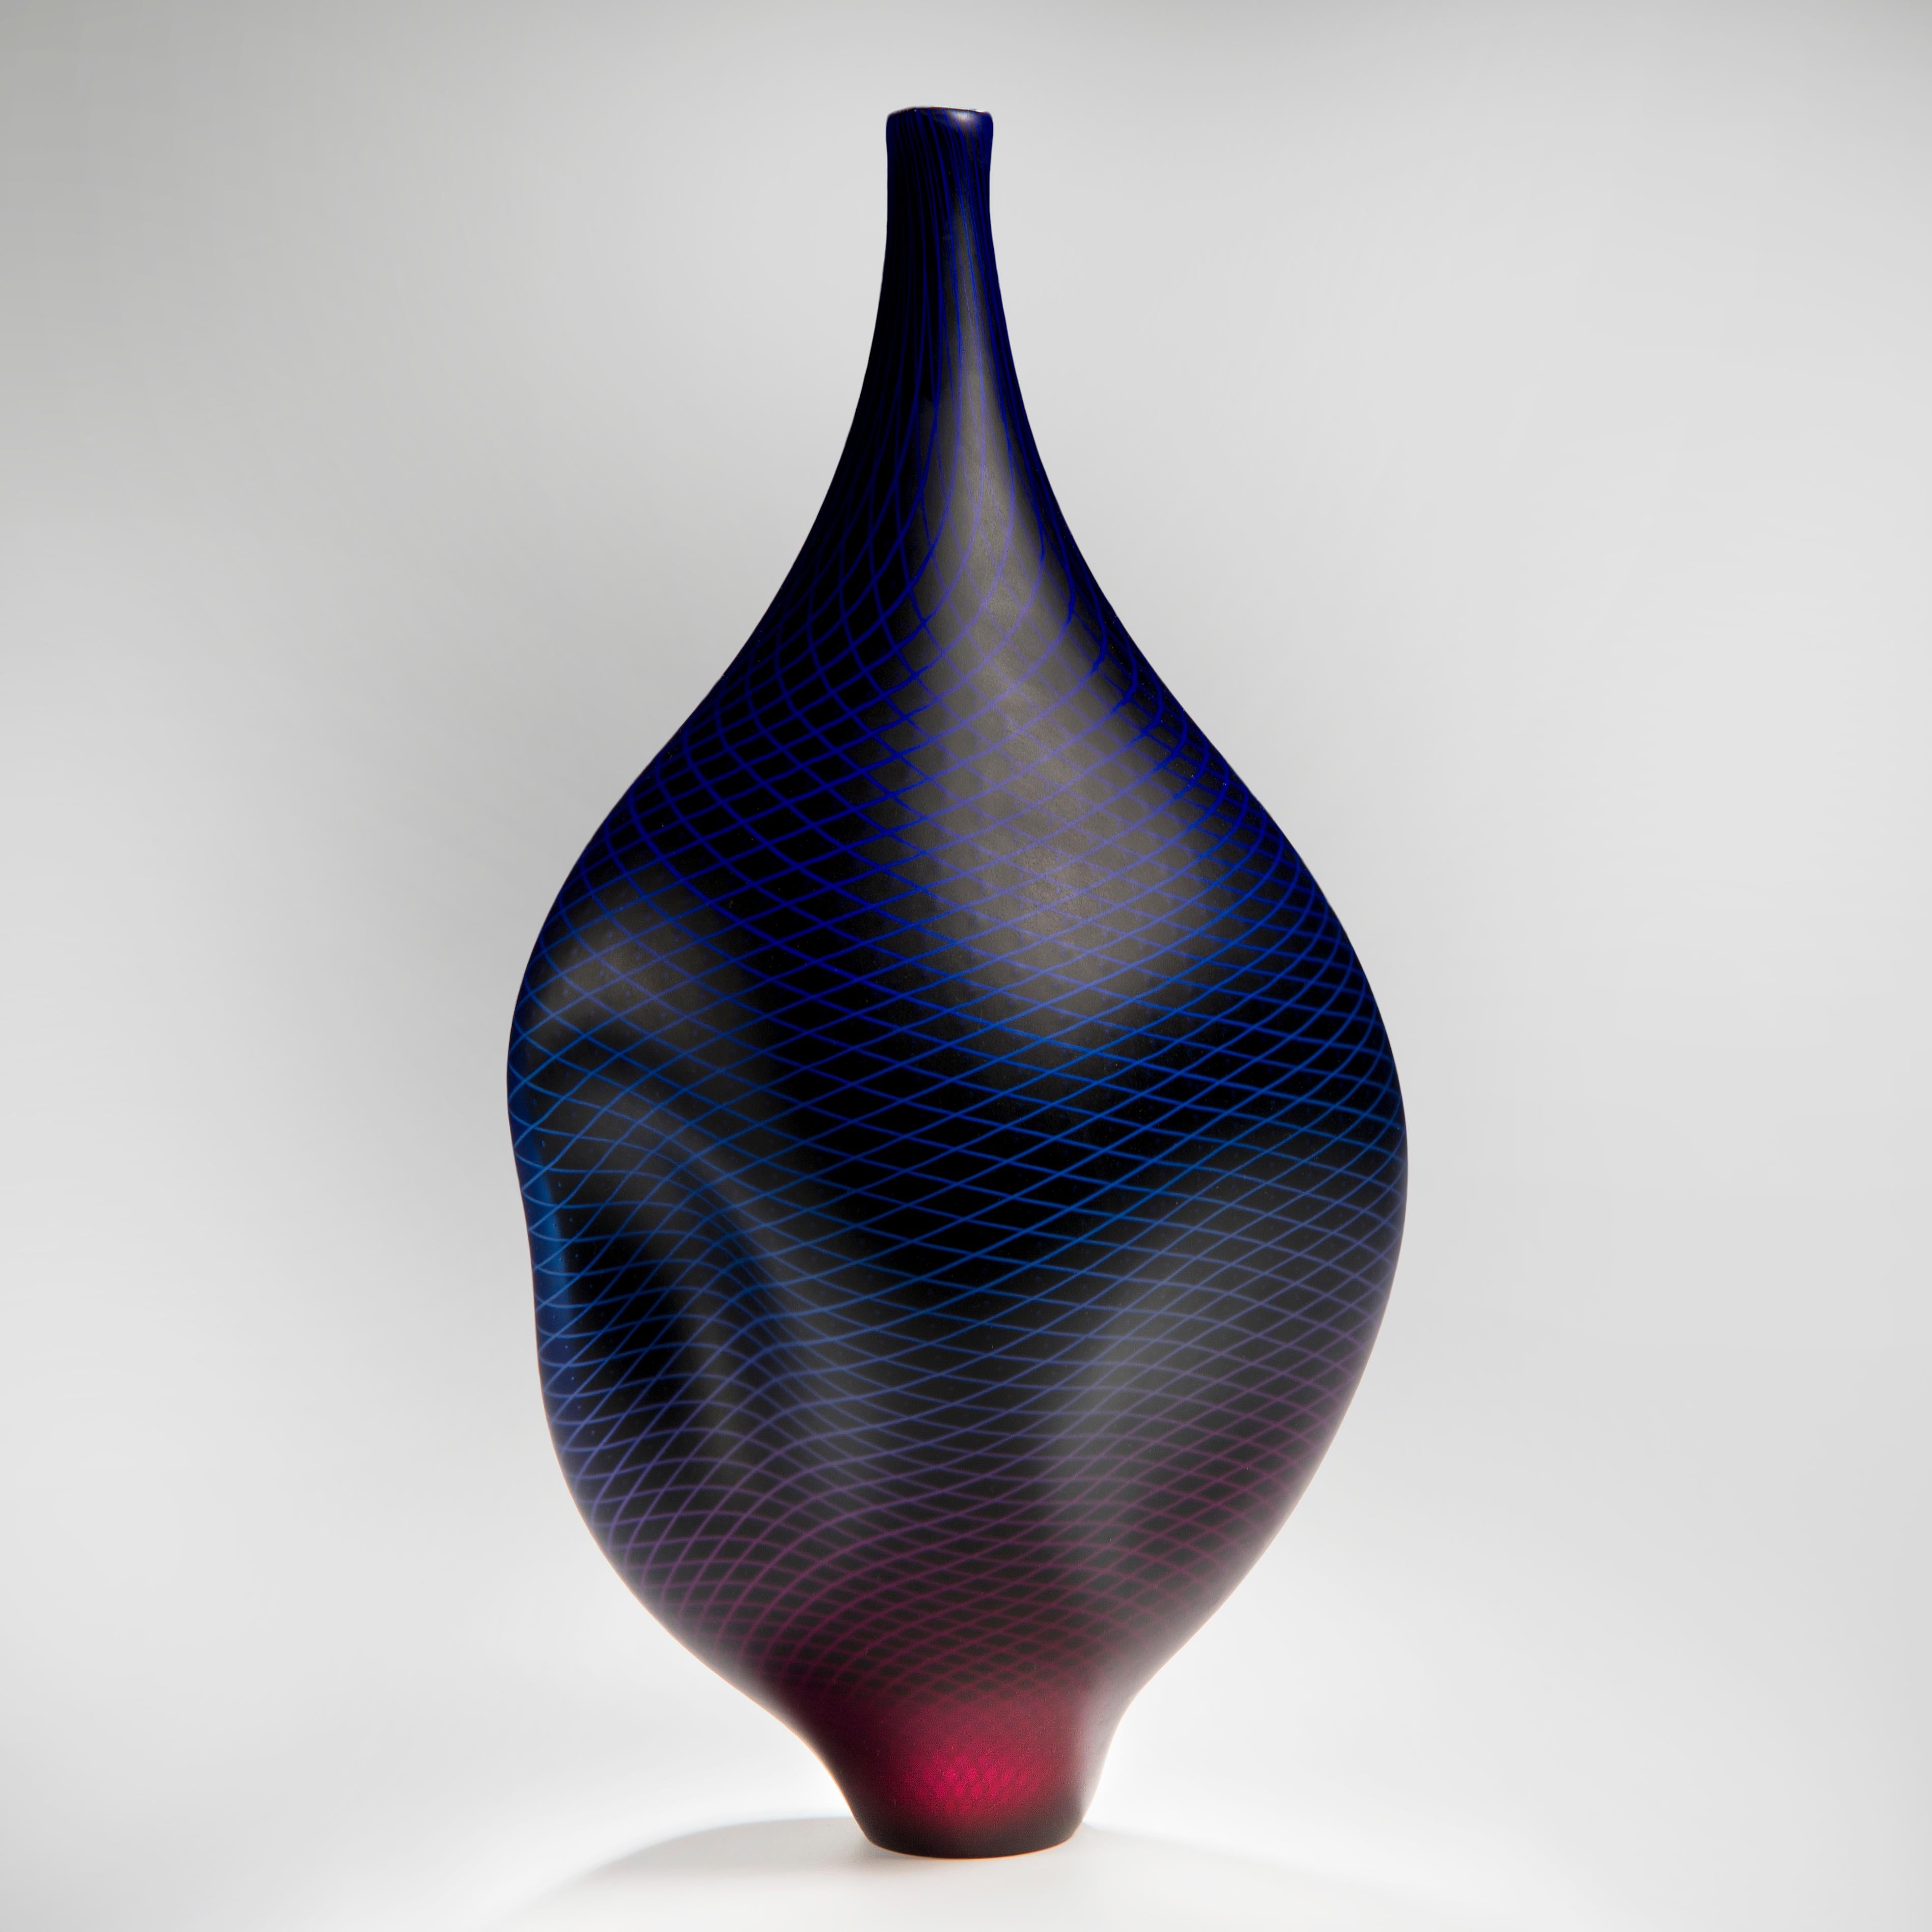 Warp & Fade 017 ist ein einzigartiges mundgeblasenes Glasgefäß mit feinen Details aus weißem Schilfrohr, das vom britischen Künstler Liam Reeves geschaffen wurde. Durch den Einsatz von Glasschichten verschmelzen die obersten Farben Blau und Rot zu